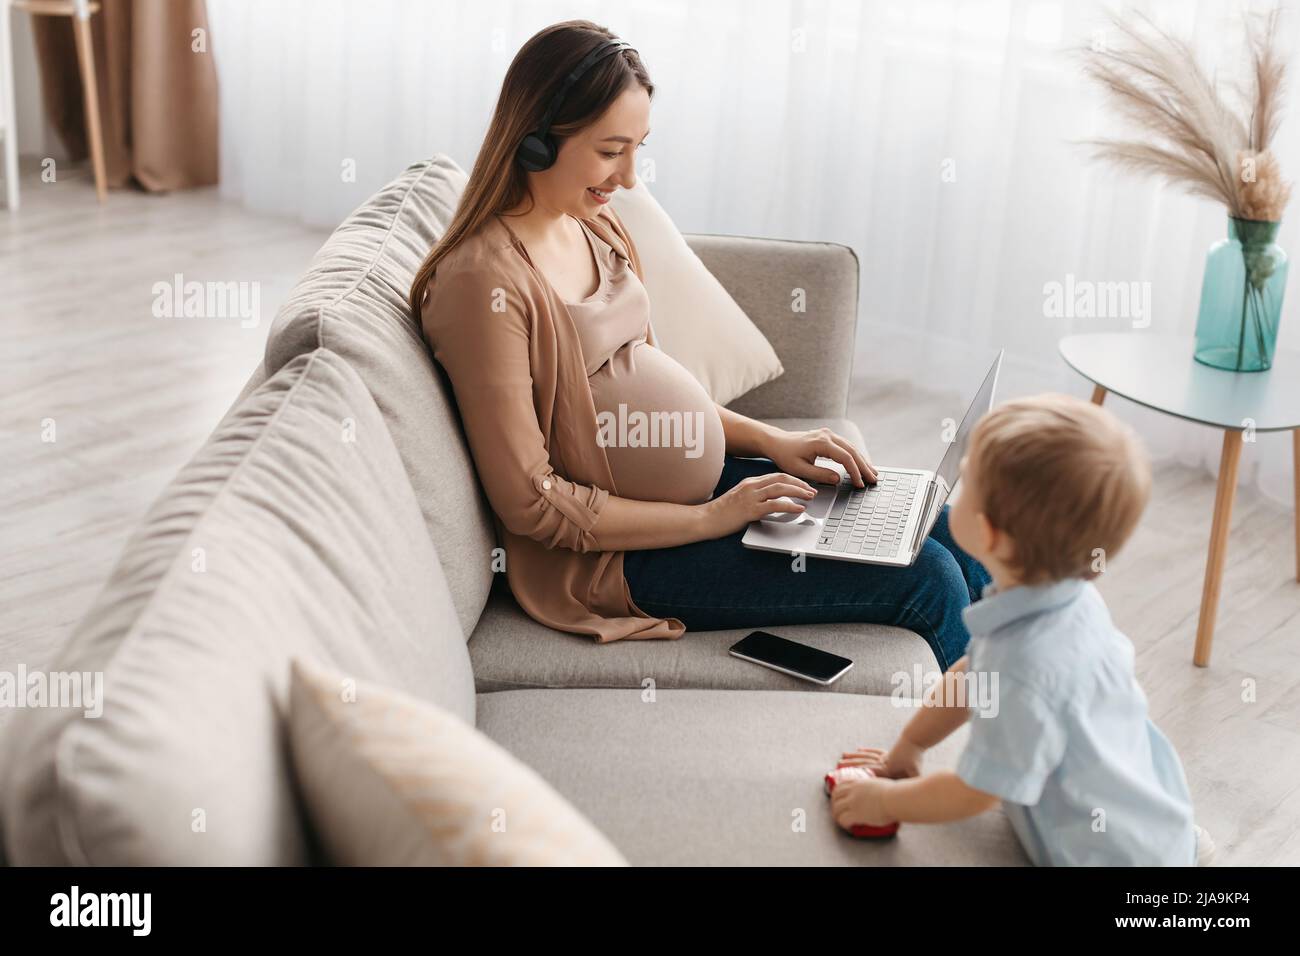 Bonne femme enceinte dans un micro-casque utilisant un ordinateur portable, étudiant ou travaillant en ligne pendant que le petit fils joue à proximité Banque D'Images